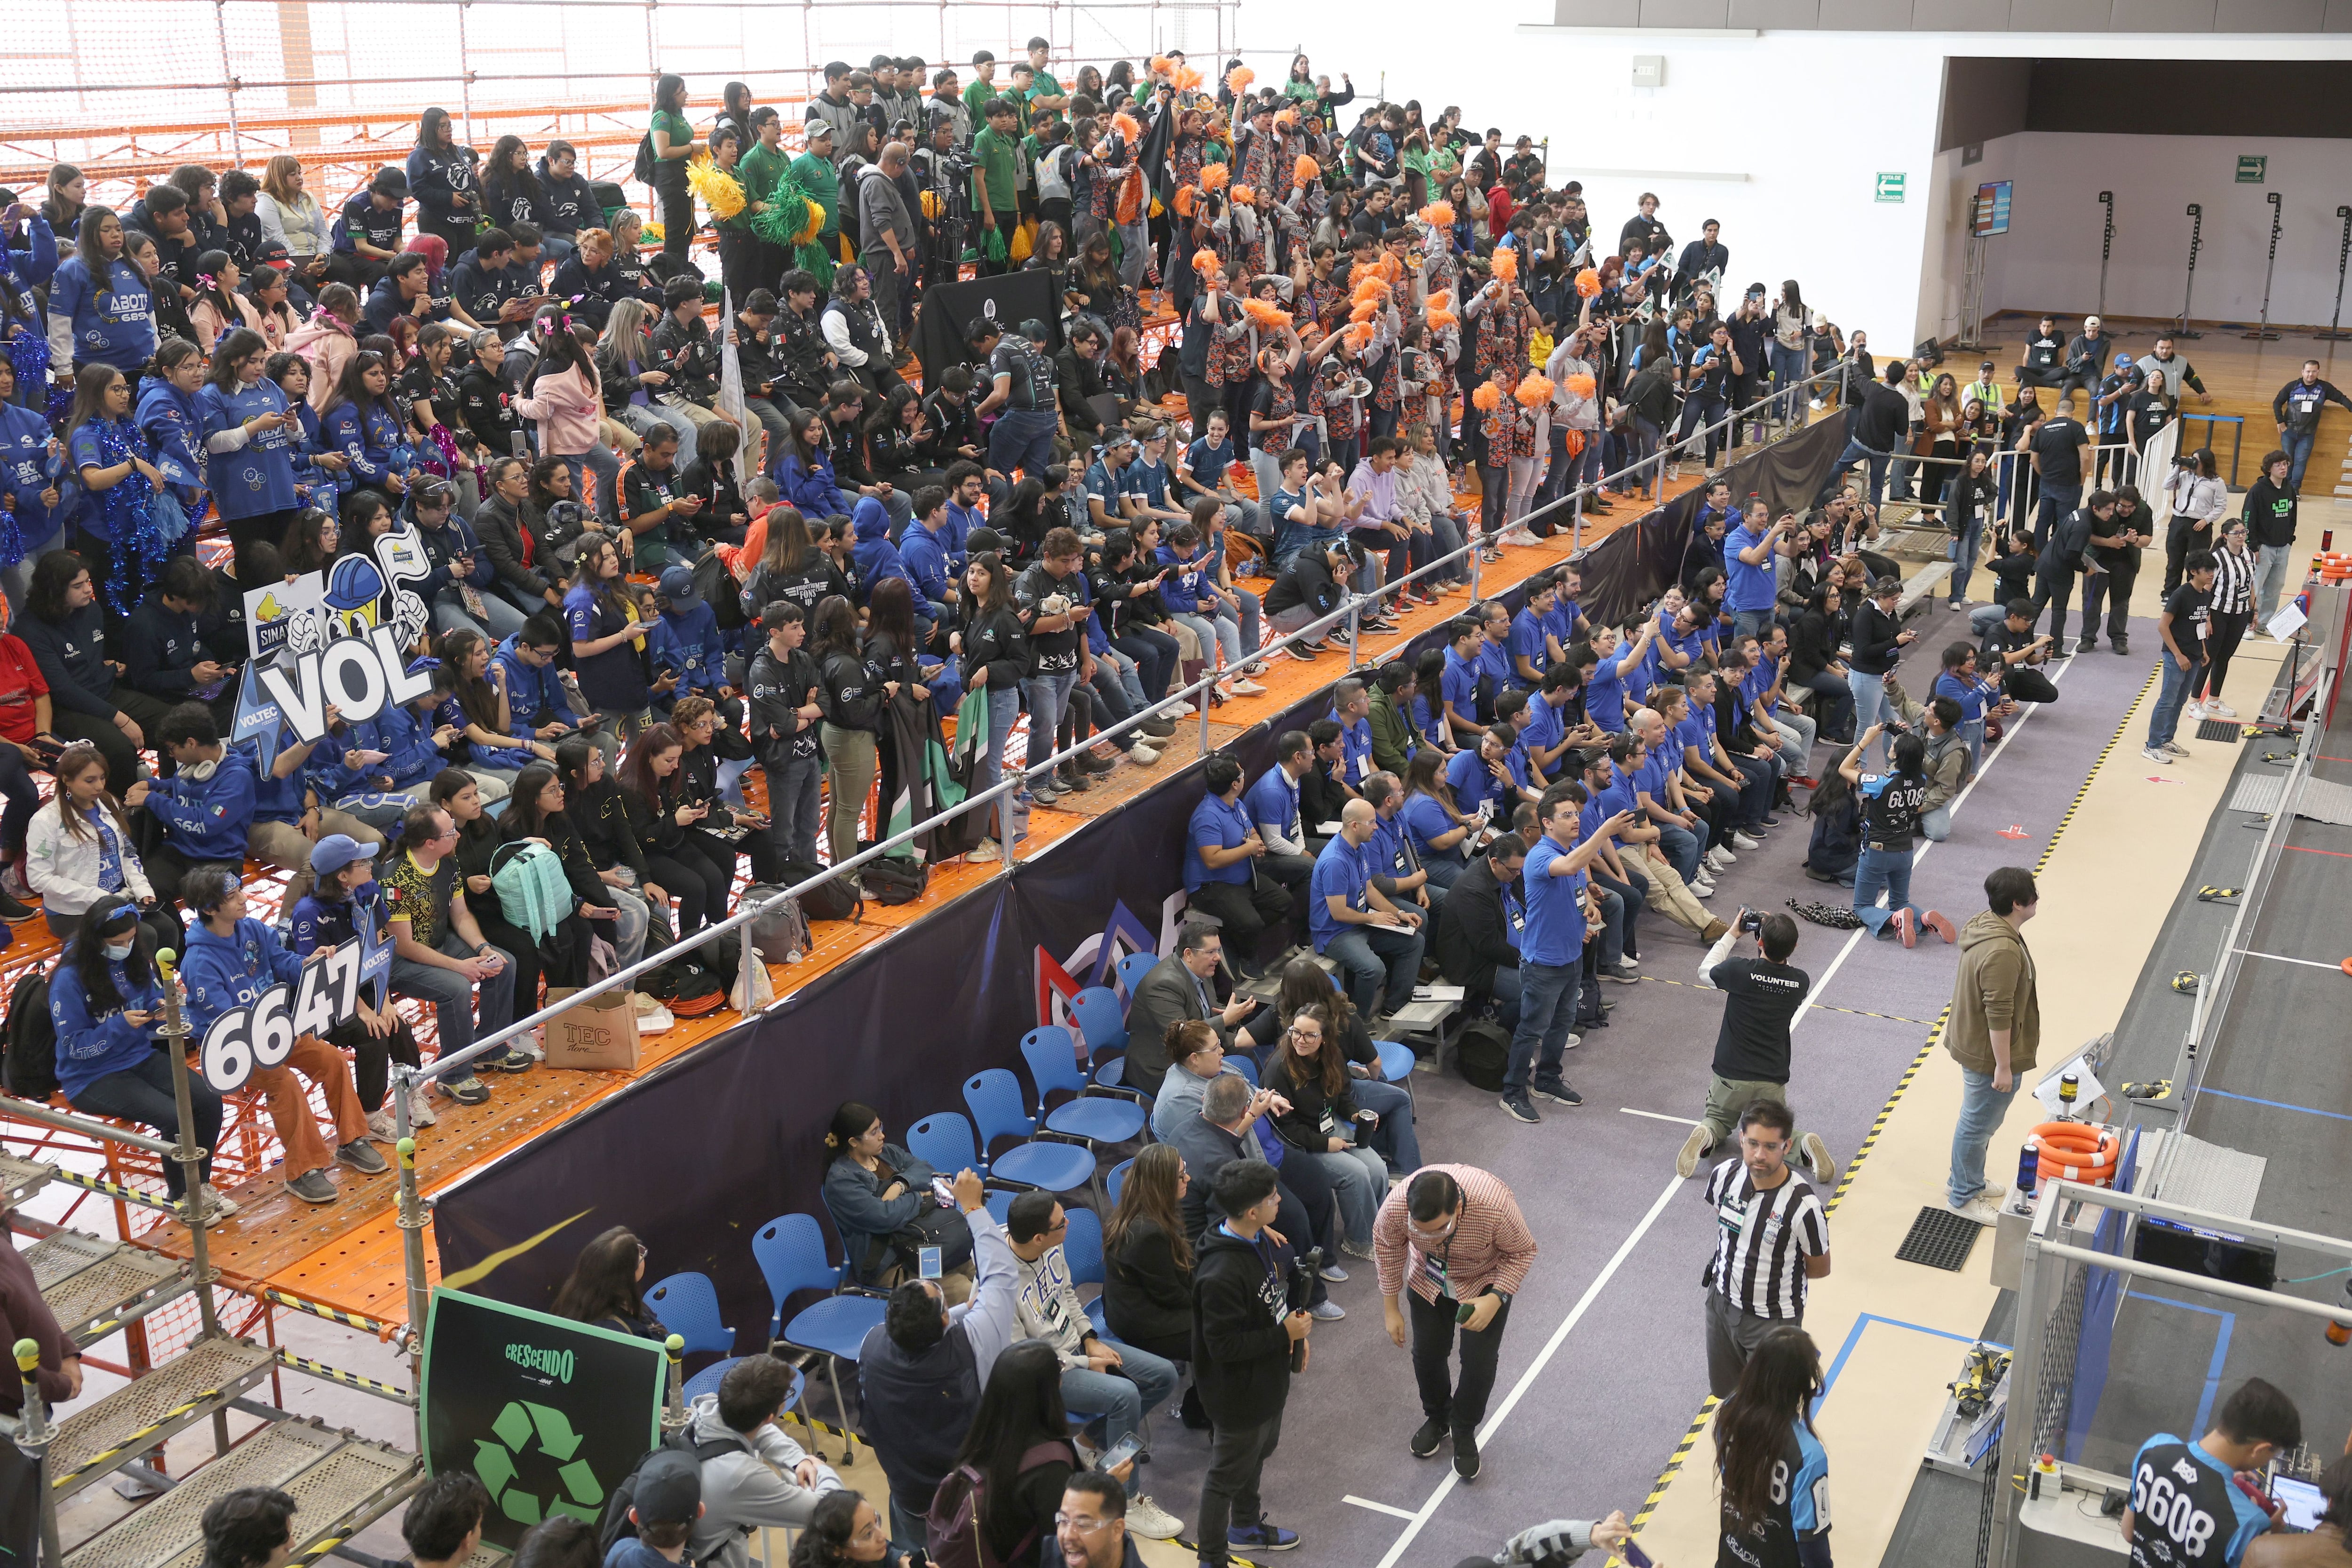 Los competidores que no estaban en acción esperaron su turno en las
tribuna de la Arena Borregos del campus Sonora Norte.